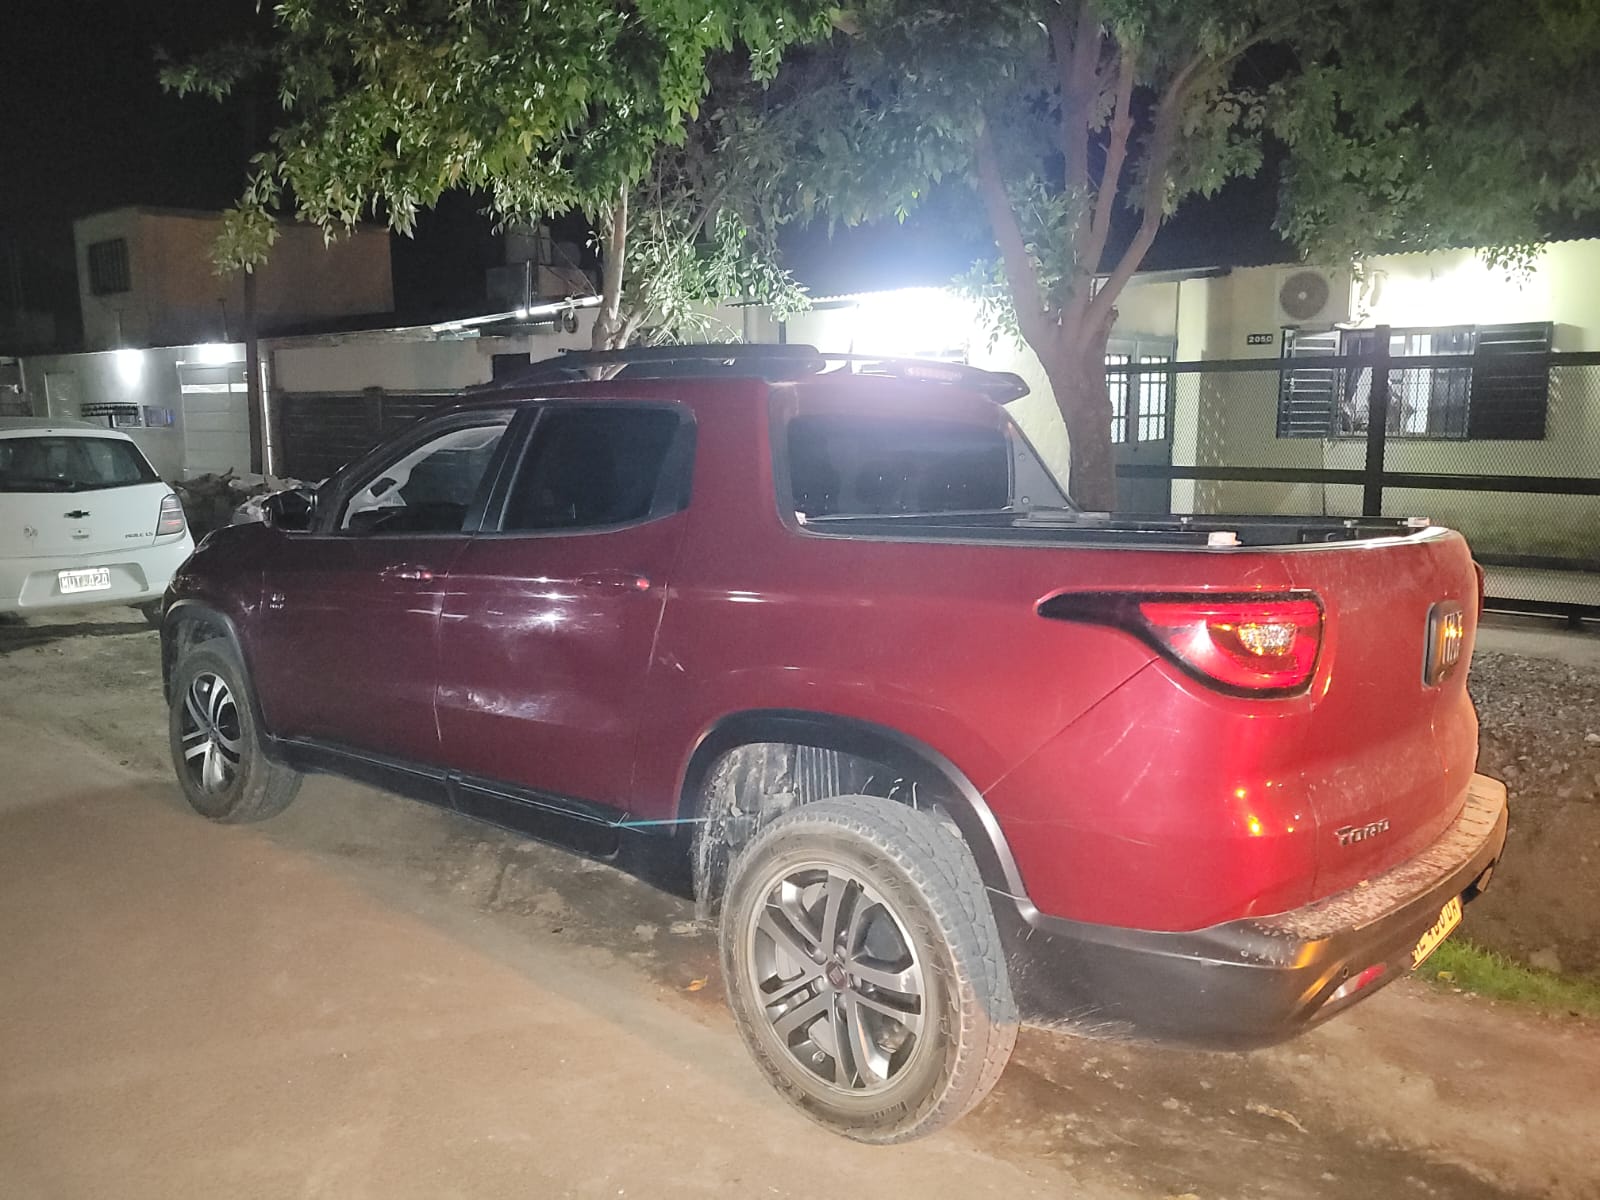 Una persecución policial terminó con el secuestro de un vehículo involucrado en escruches en Funes